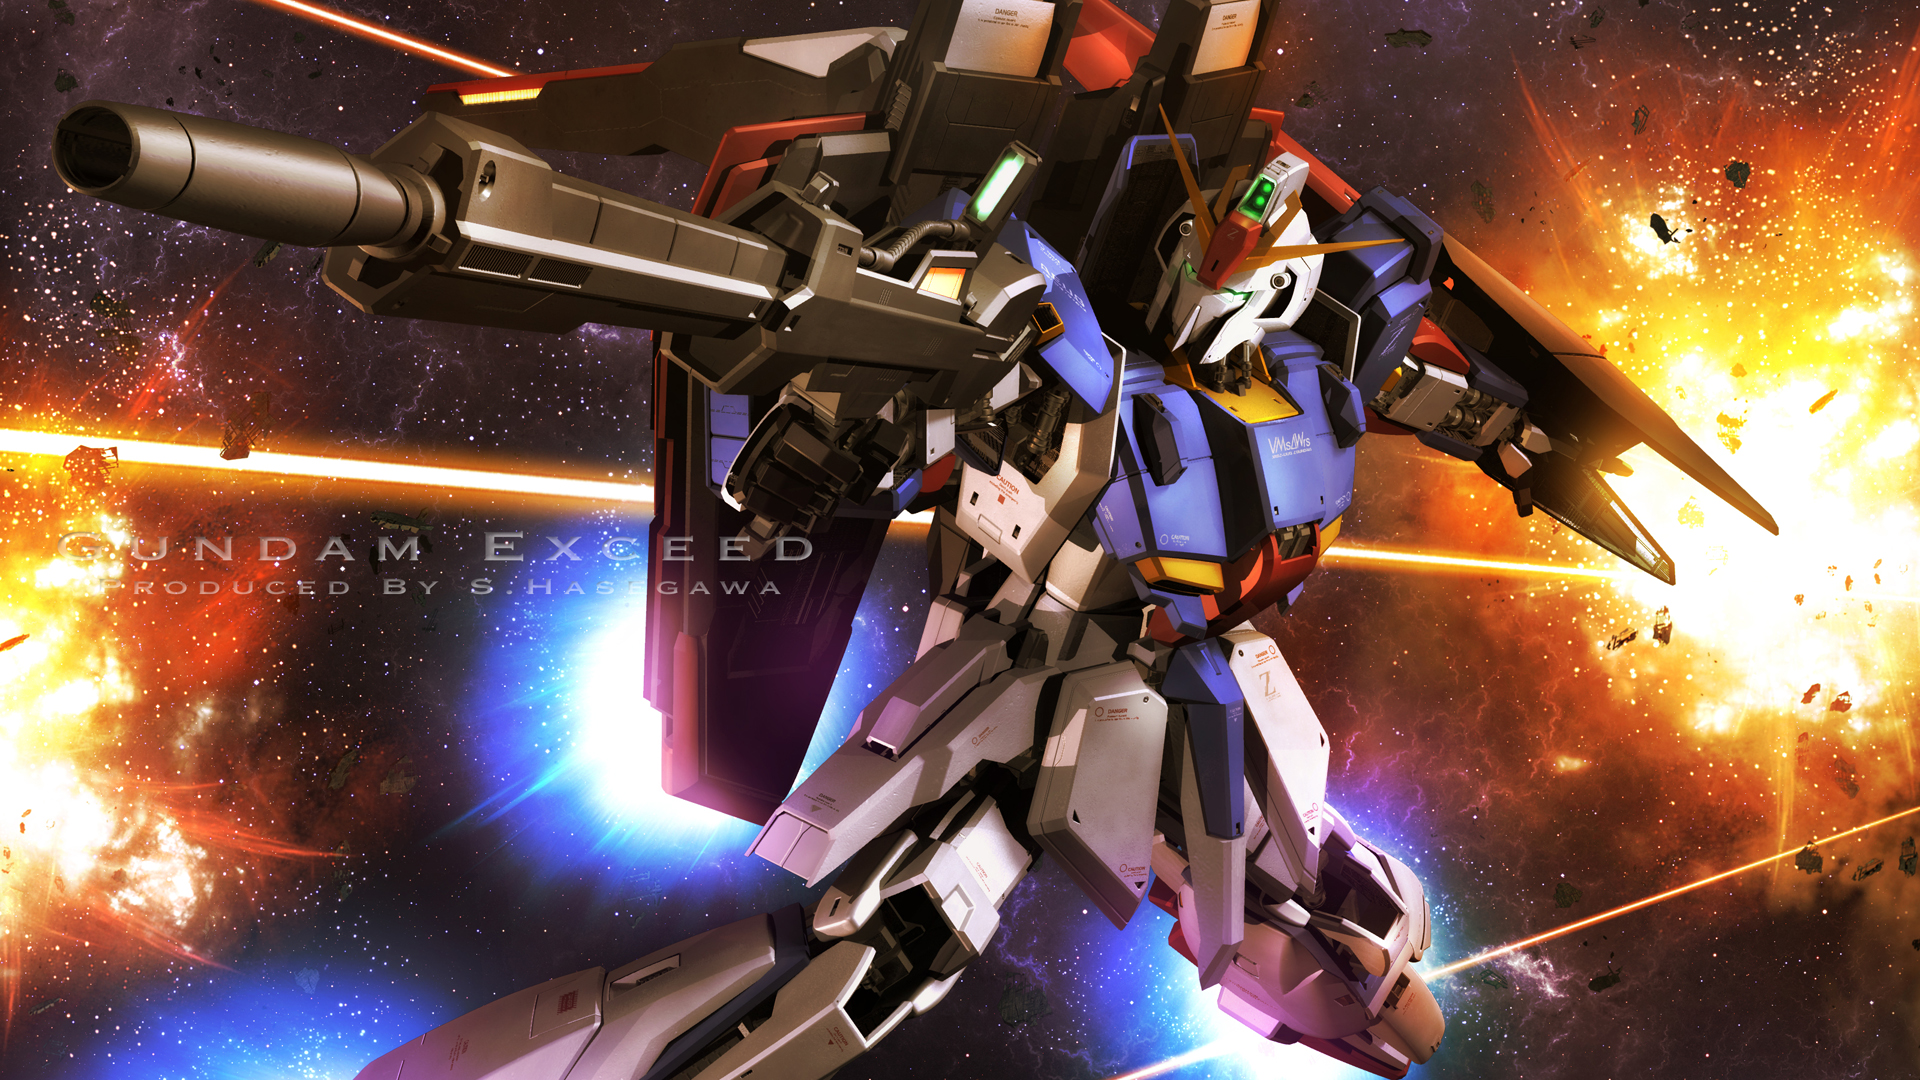 MSZ 006 Zeta Gundam Suit Gundam Anime Image Board